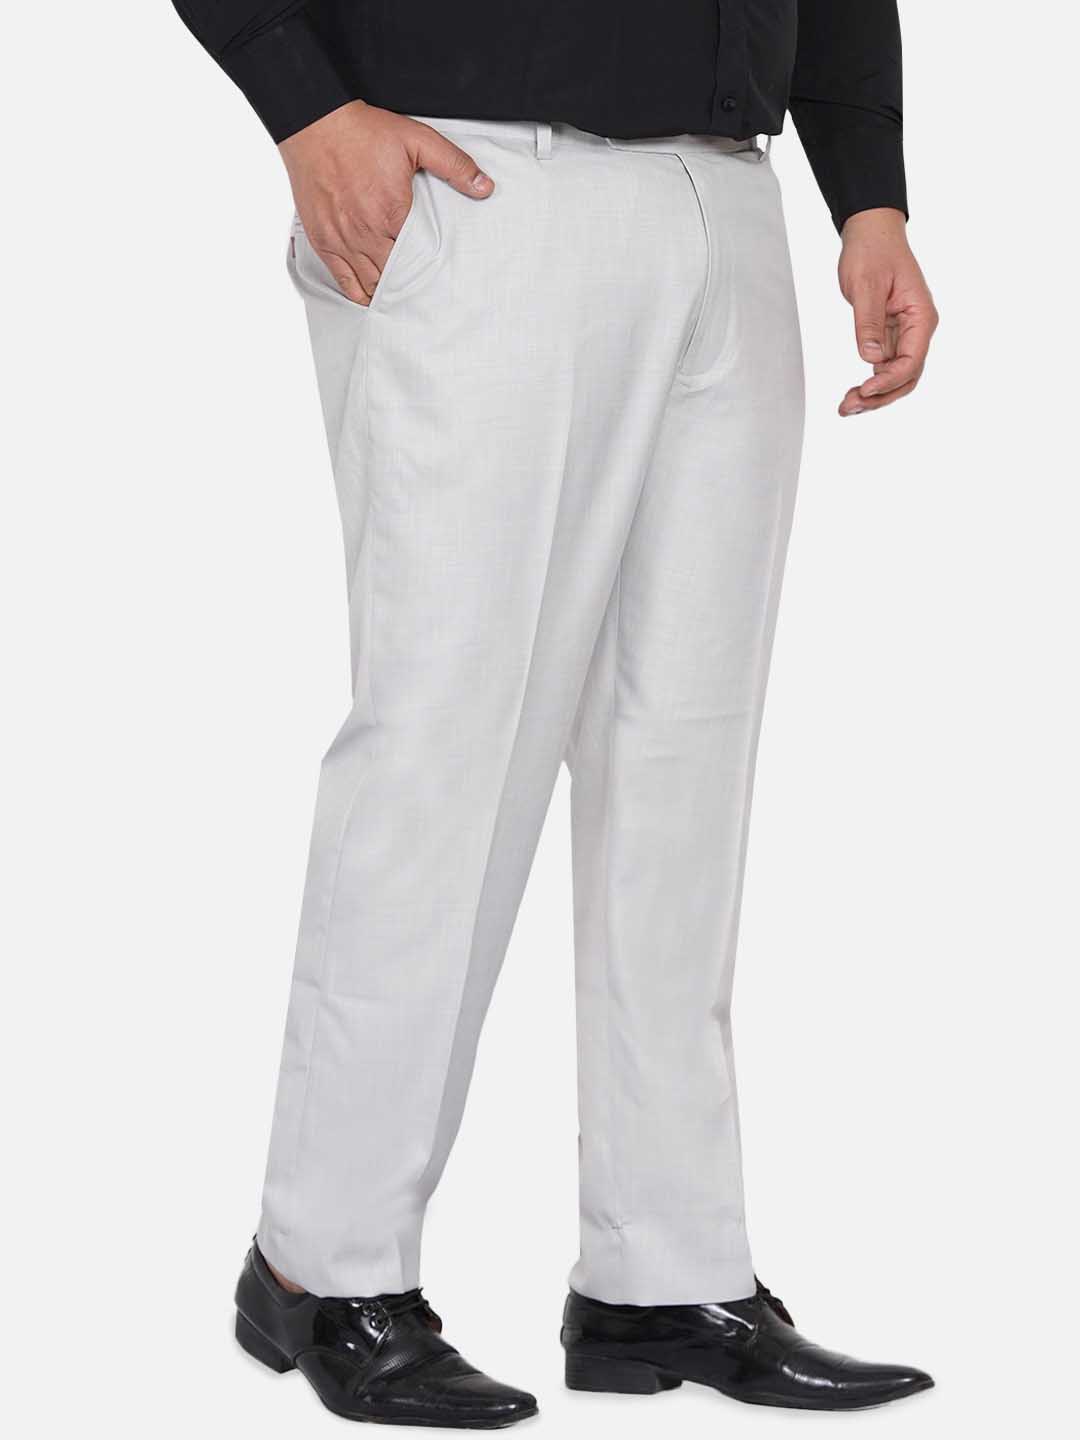 bottomwear/trousers/JPTR22010C/jptr22010c-4.jpg